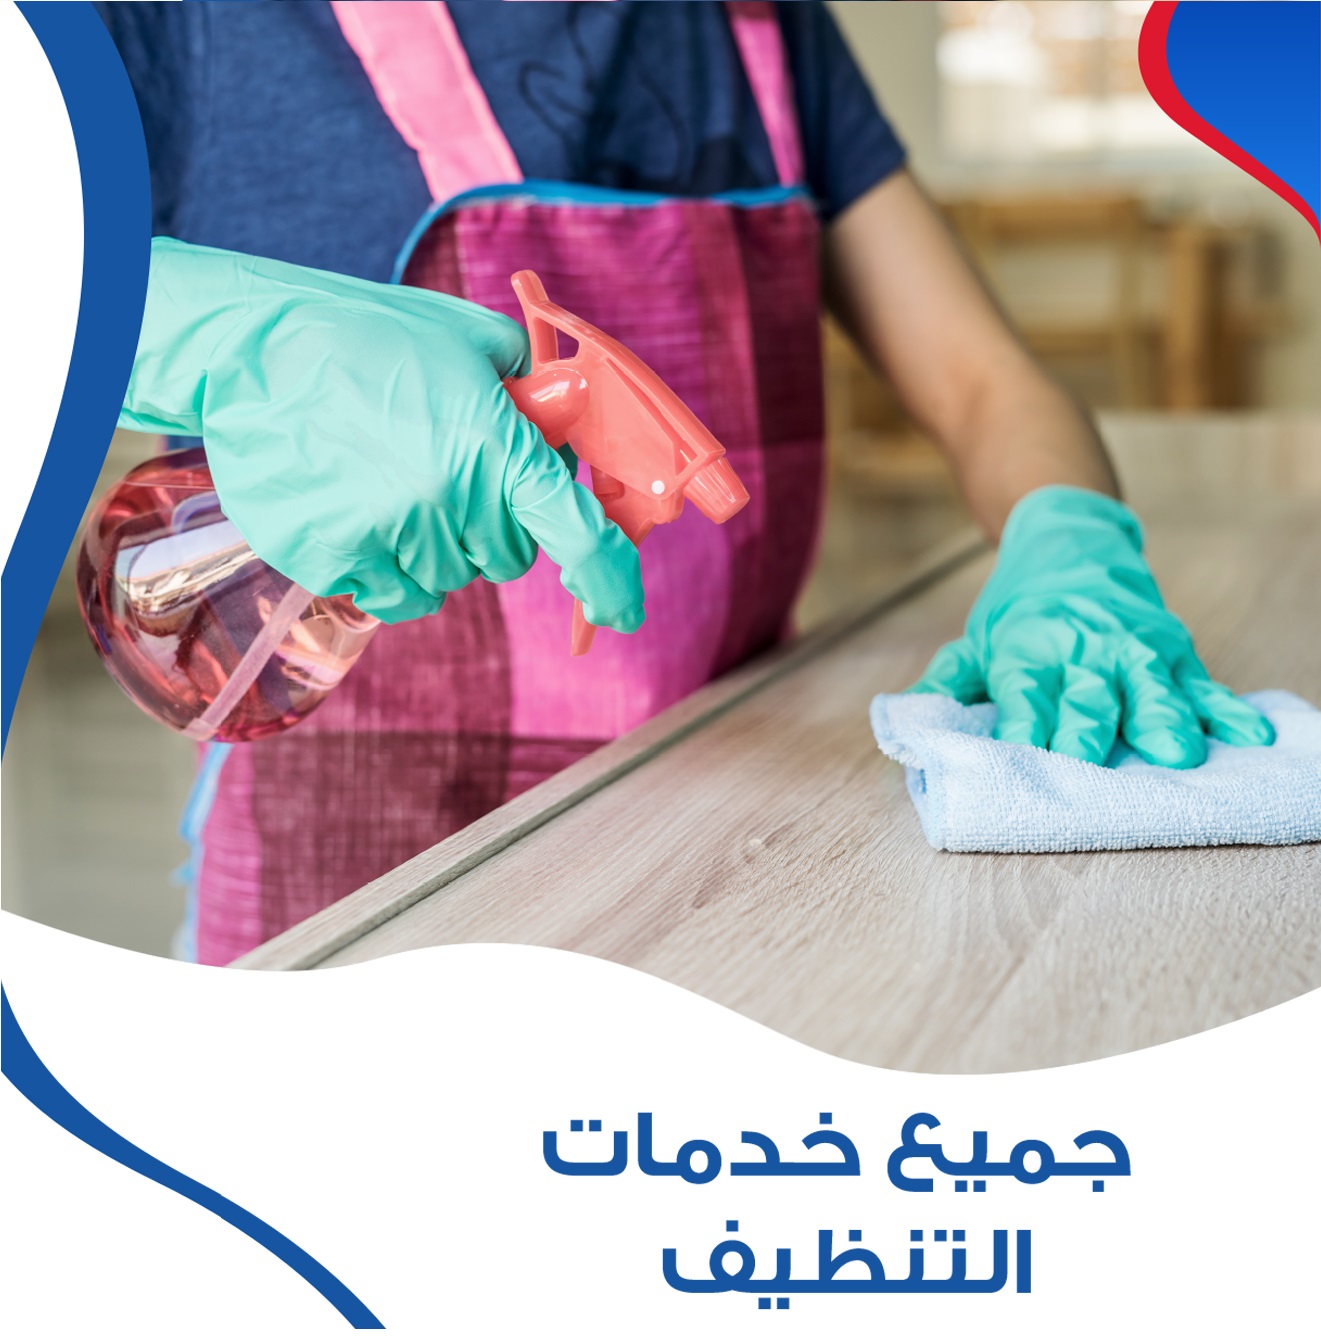 نوفر خدمة العمالة المنزلية للتنظيف والترتيب و التعزيل اليومي لاجلكم رضاكم مضمون وبأسعار منافسة